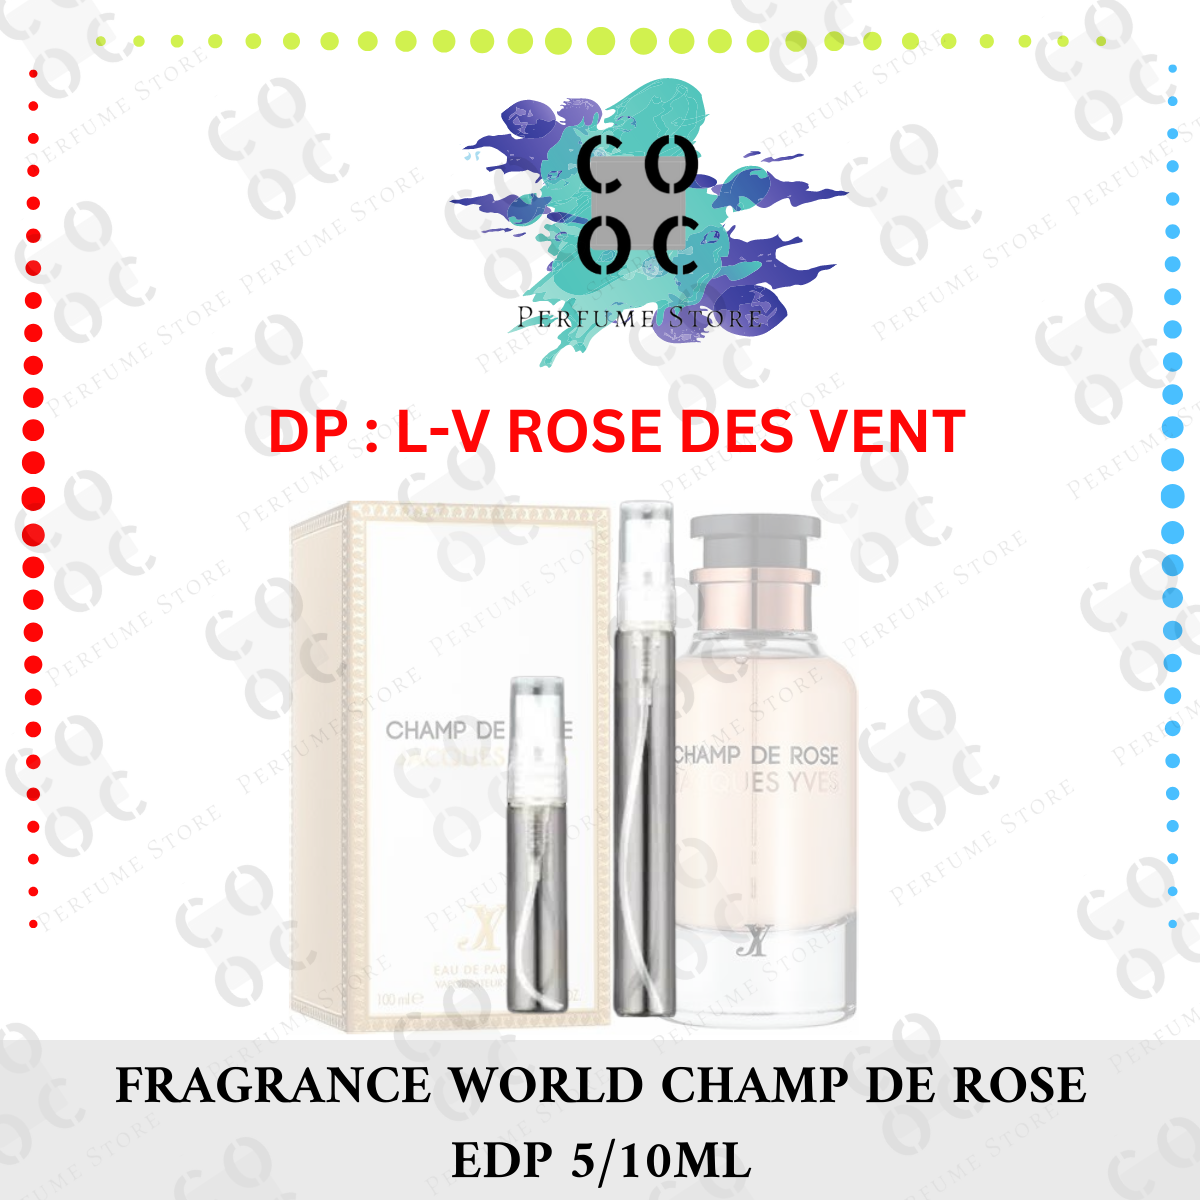  FRAGRANCE WORLD CHAMP DE ROSE JACQUES YVES100 ml